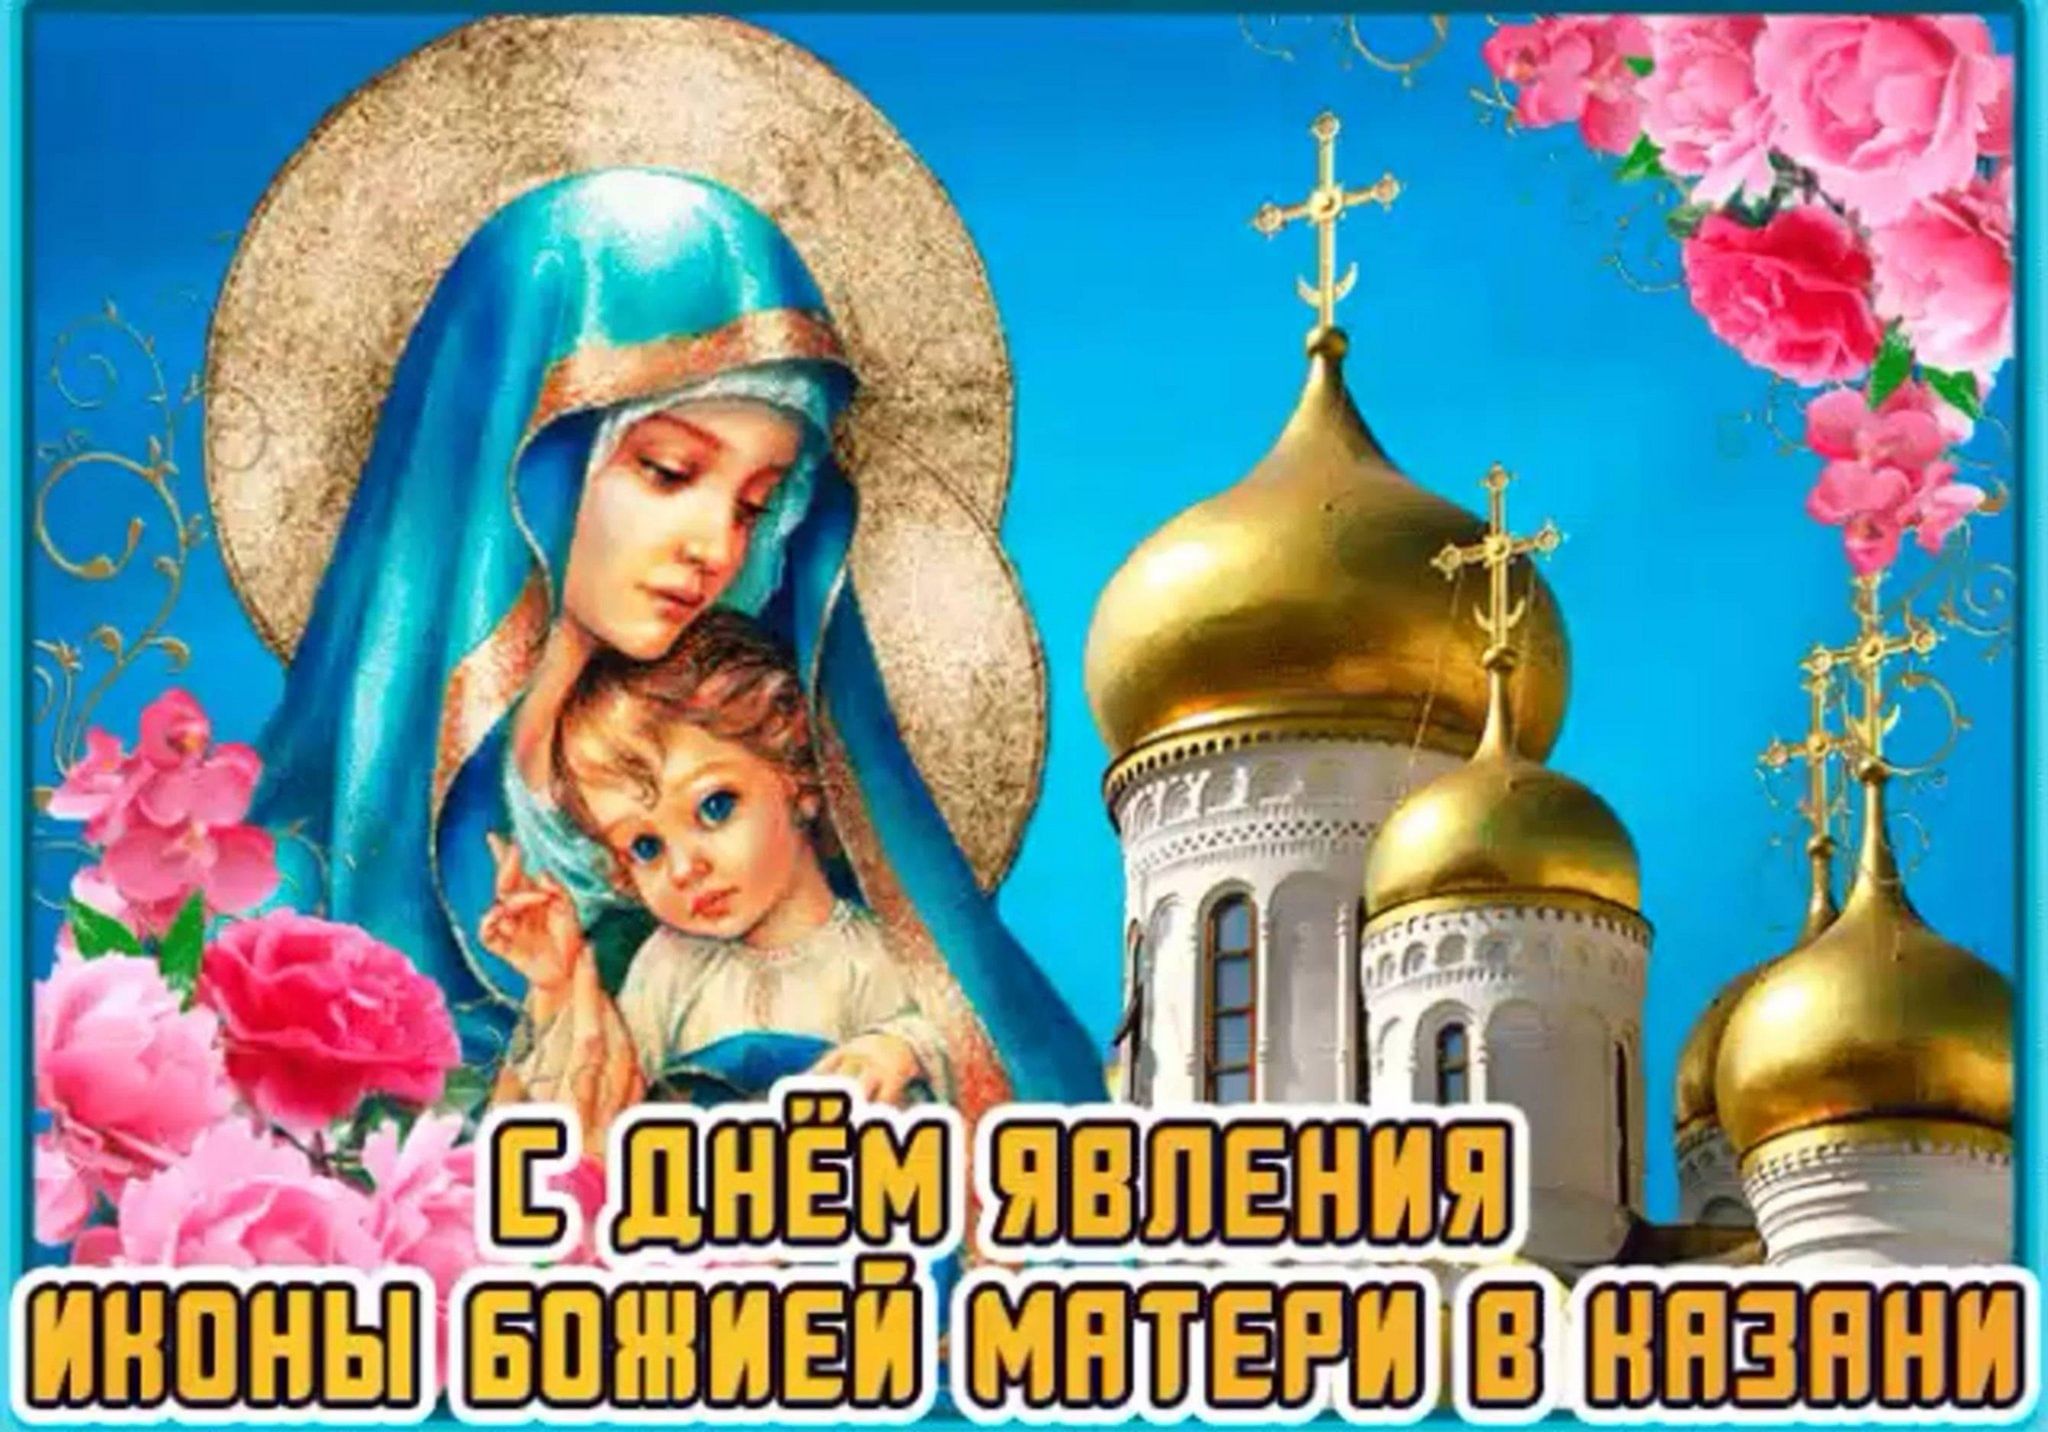 поздравляю с казанской божьей матерью картинки